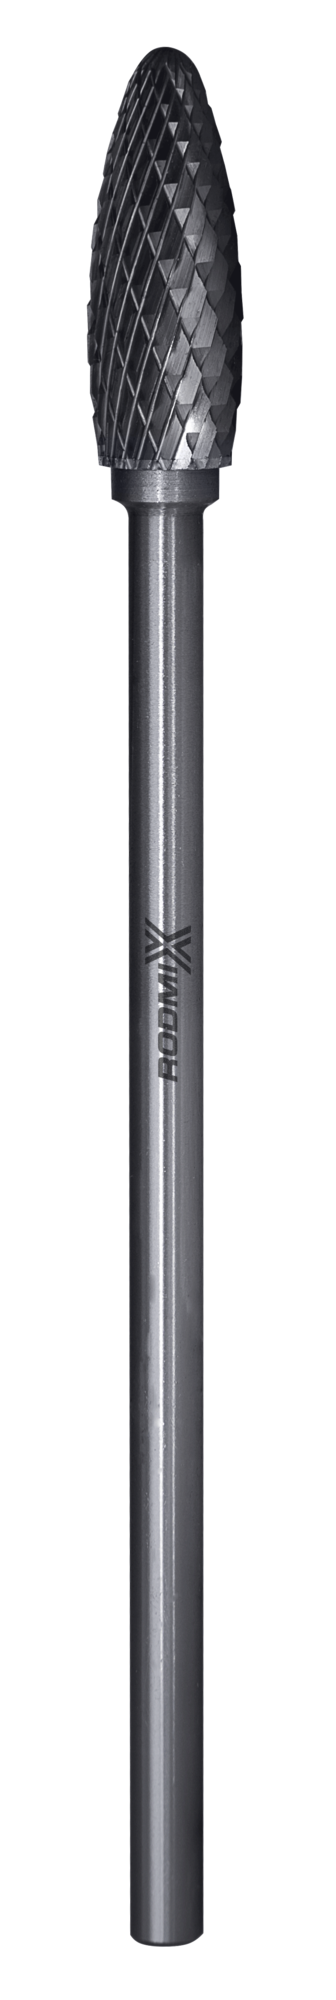 Твердосплавная борфреза по металлу тип H пламевидная удлиненная 8х20 L150 М6 мм двойная насечка 1